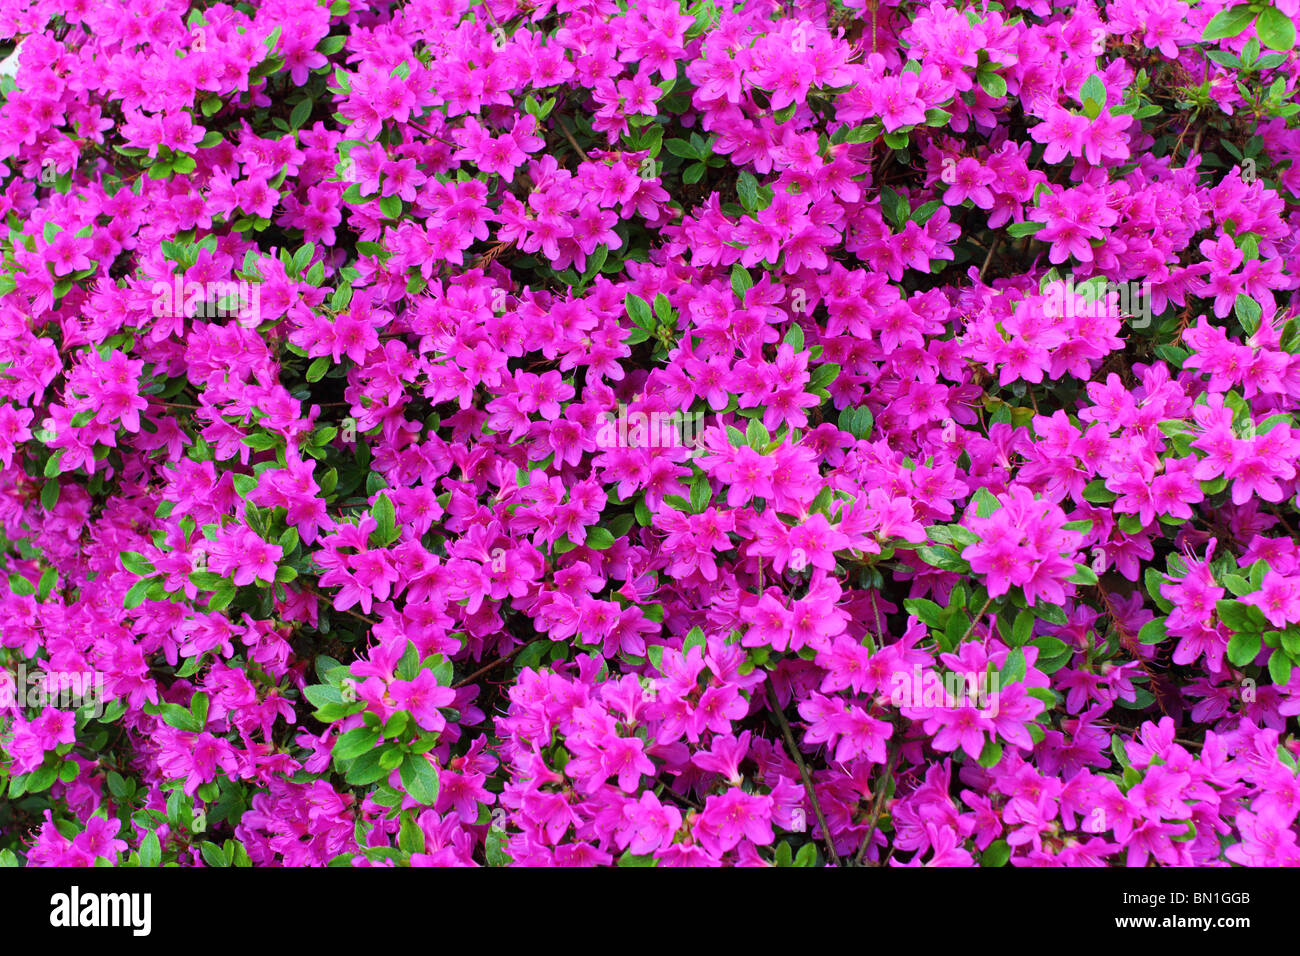 Viola fiori di rododendro close up Foto Stock